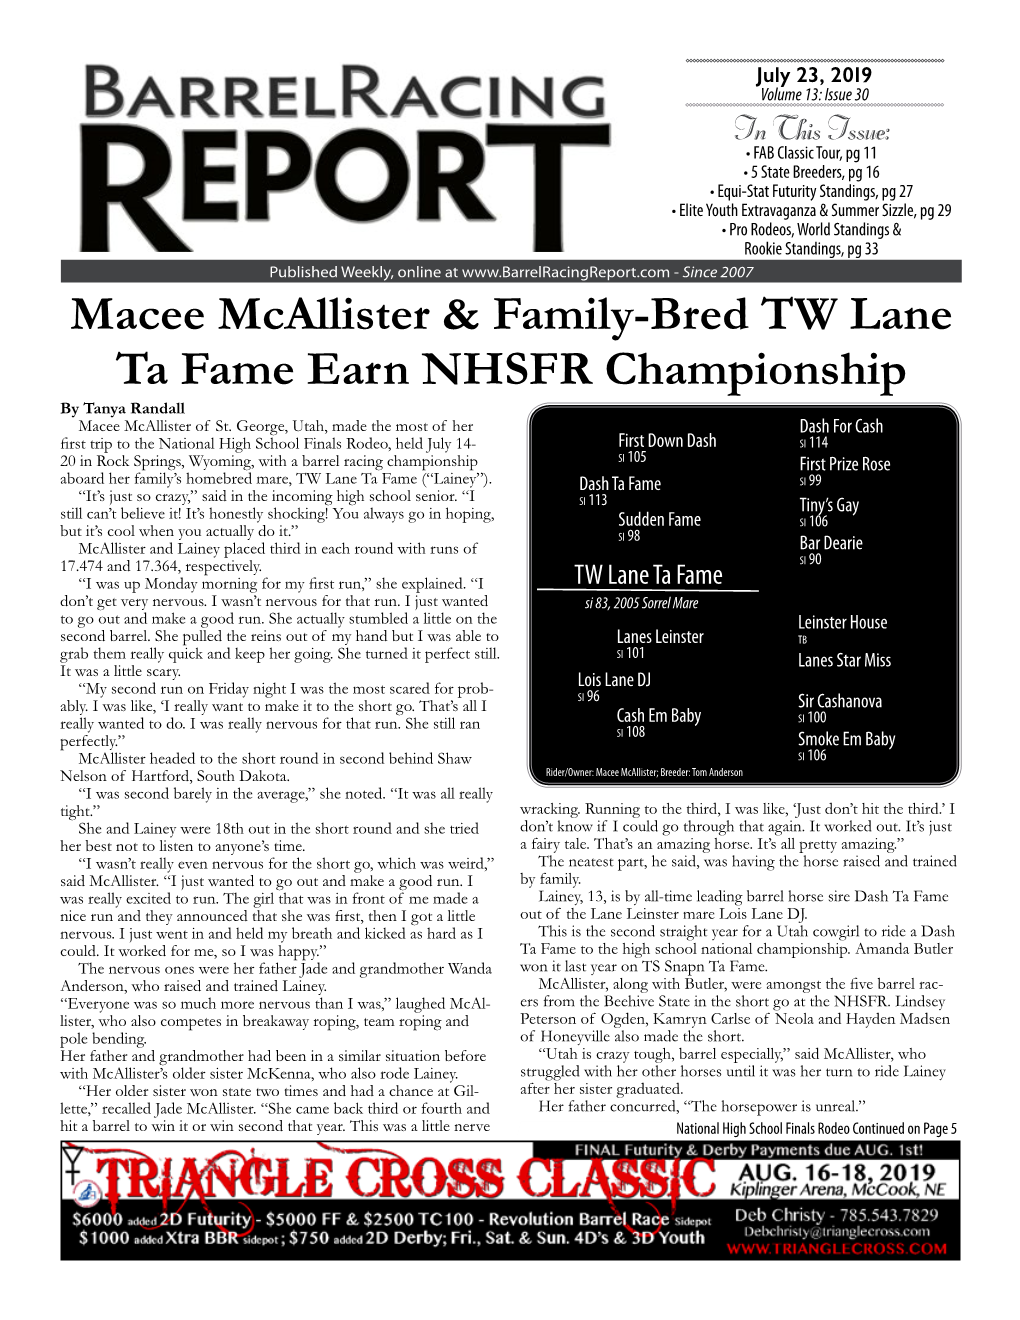 Macee Mcallister & Family-Bred TW Lane Ta Fame Earn NHSFR